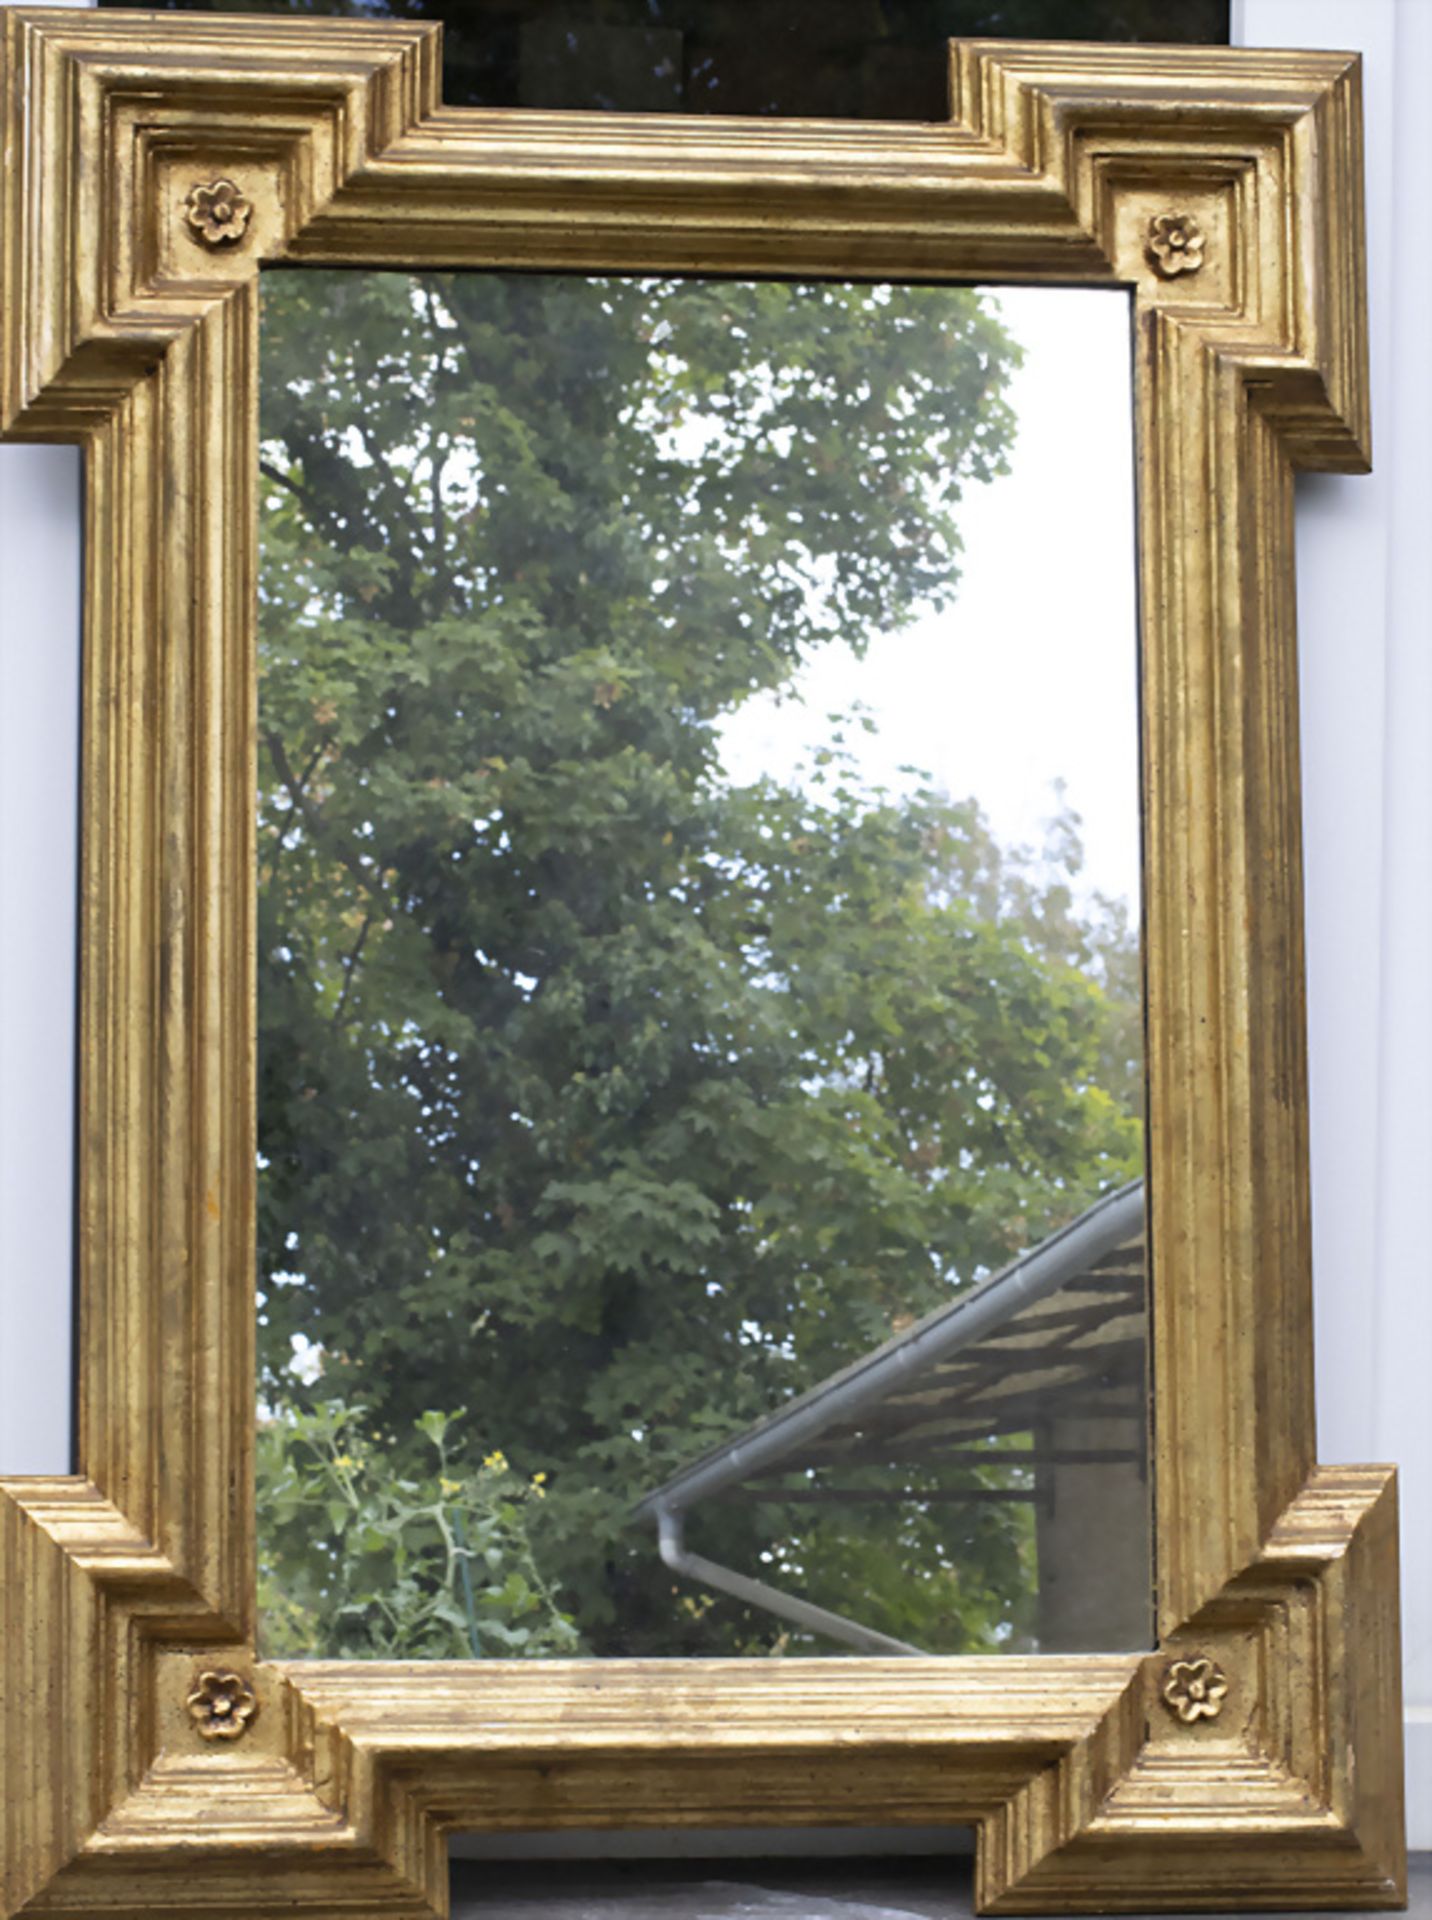 Wandspiegel / A wooden wall mirror